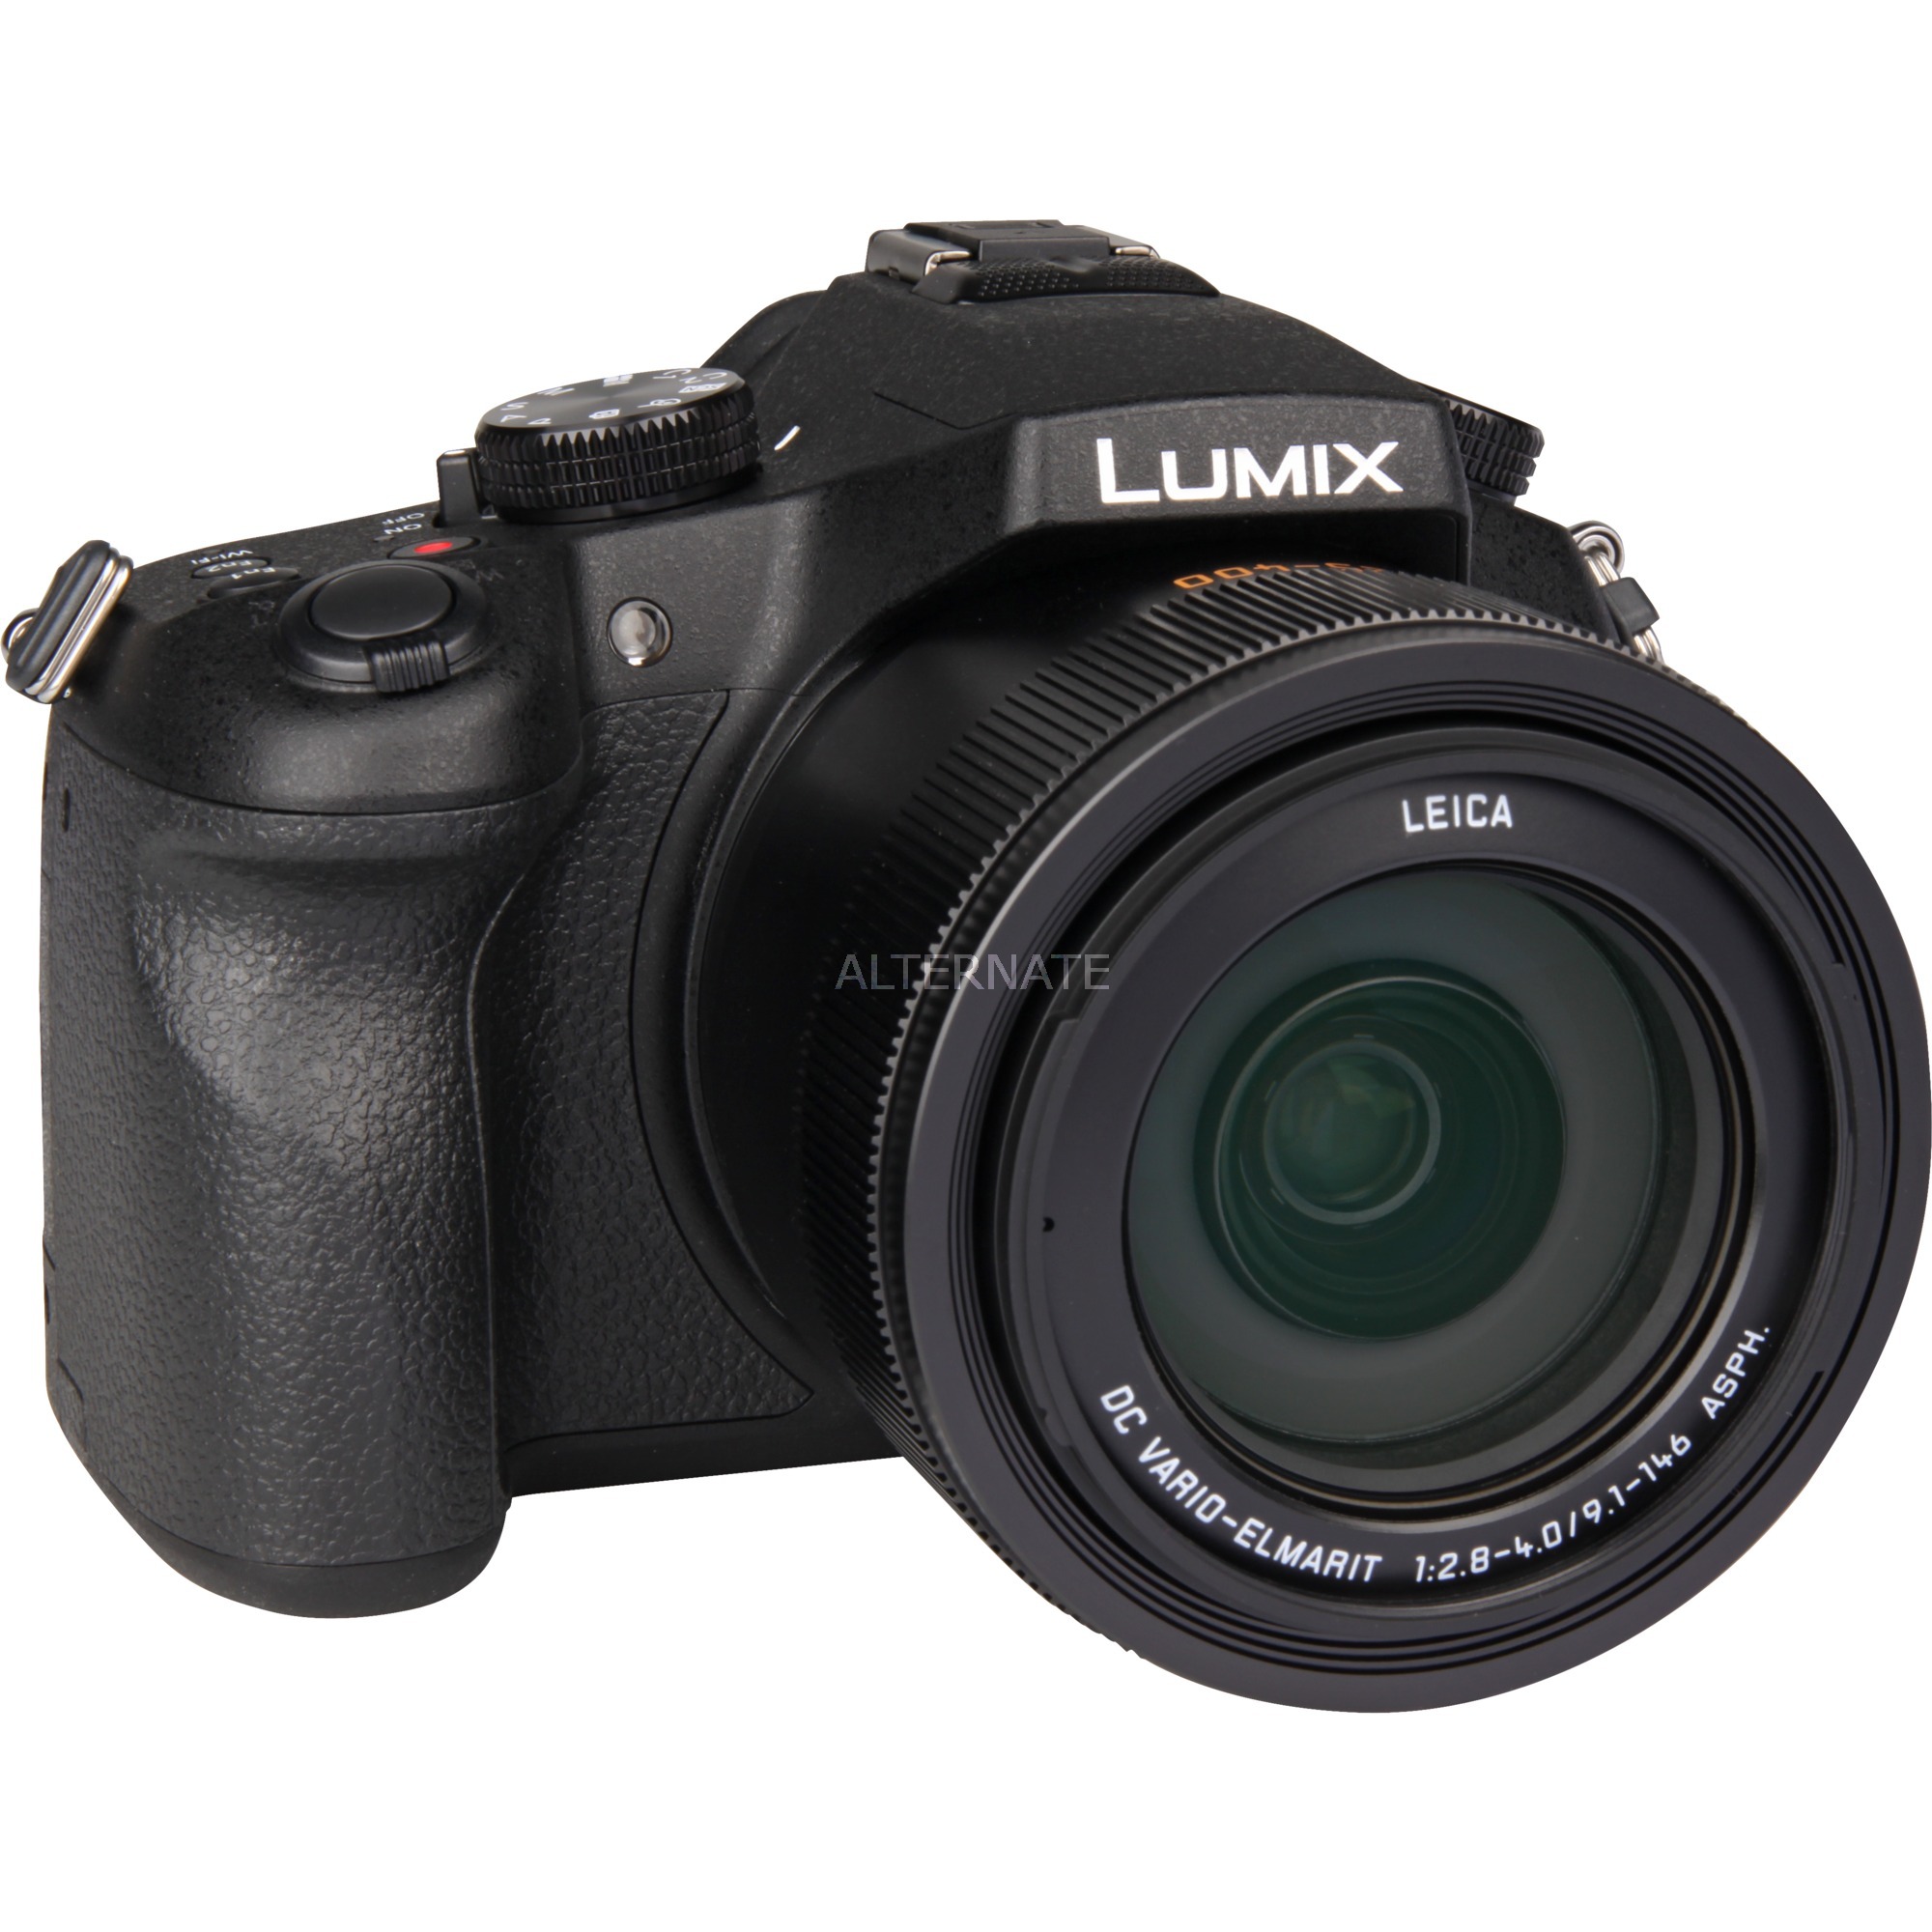 Lumix DMC-FZ1000 Aparat hybrydowy 20,1 MP MOS 5472 x 3648 piksele Czarny, Cyfrowy aparat fotograficzny